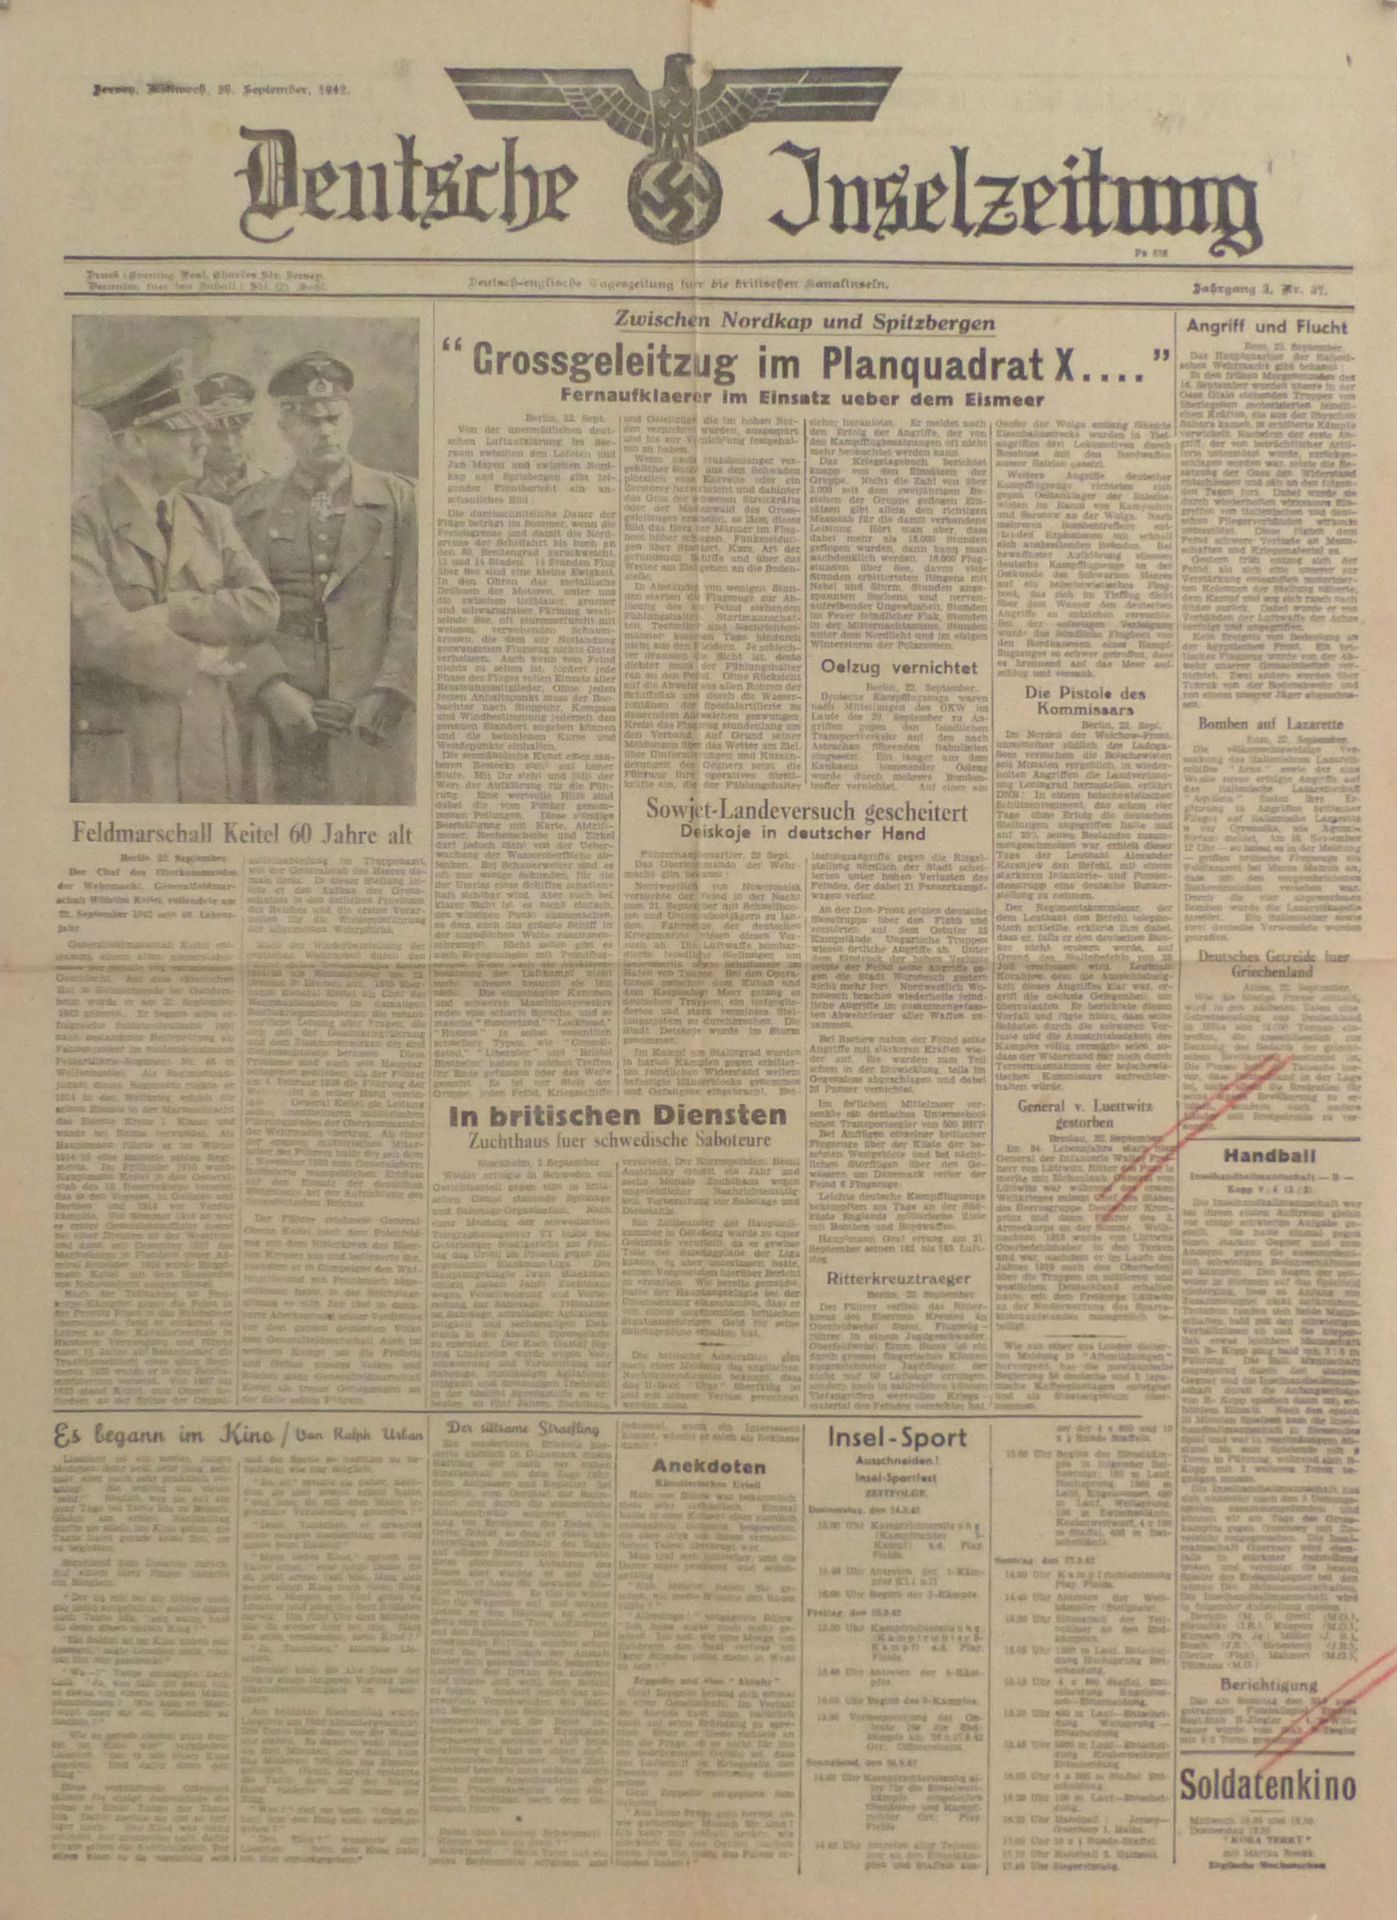 Buch WK II Deutsche Inselzeitung Tageszeitung für die briischen Kanalinseln 1942 Sprache Deutsch